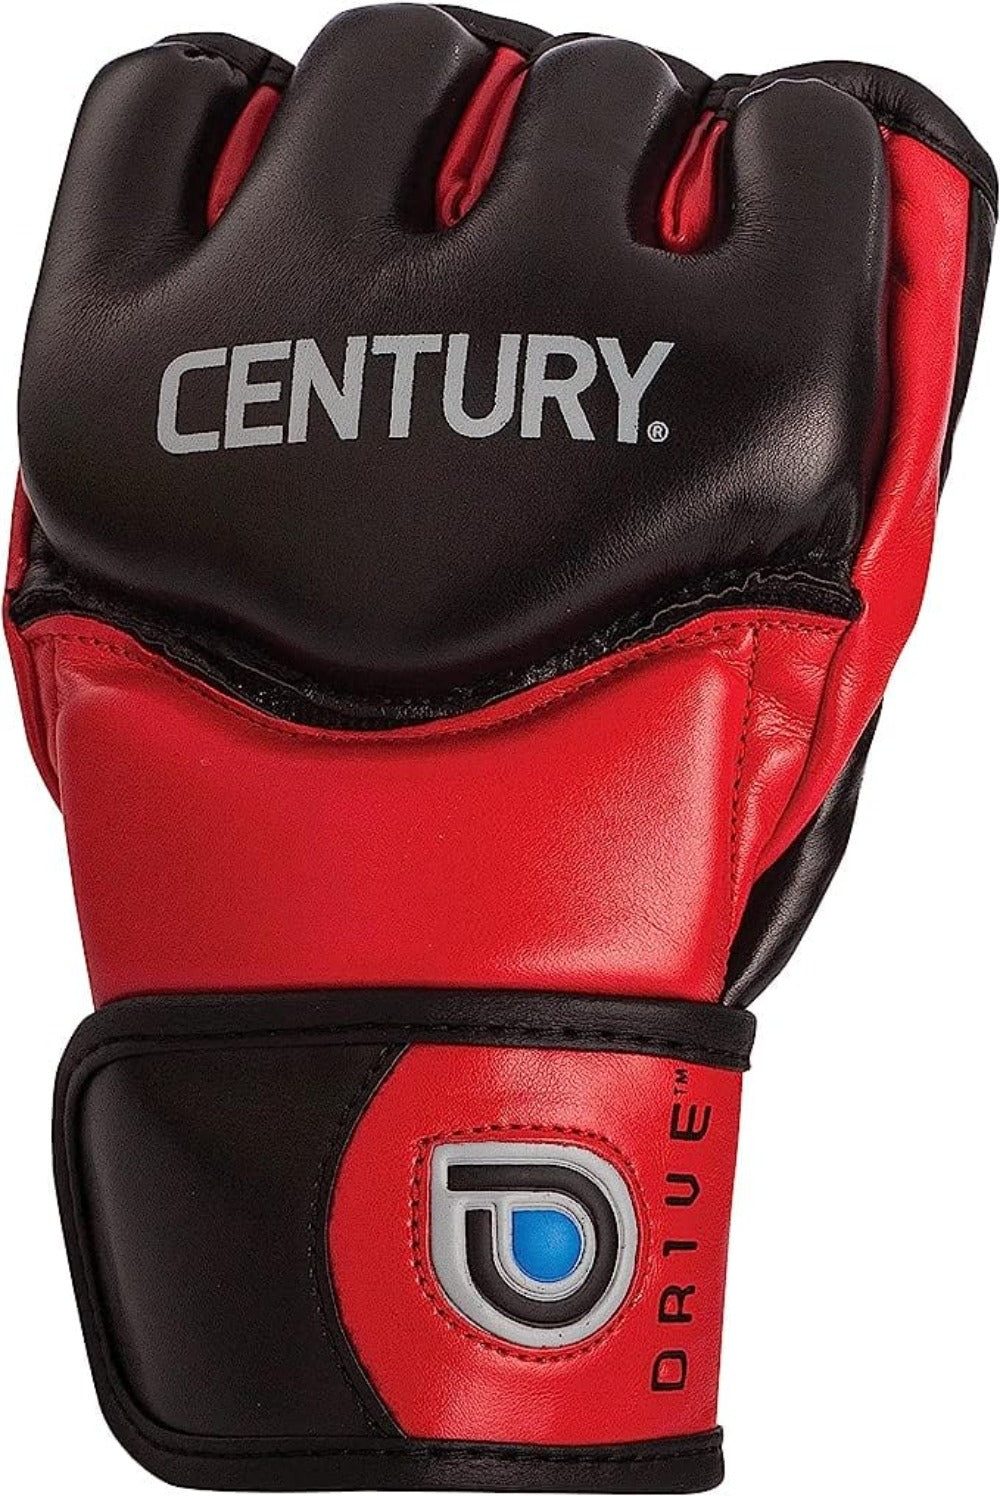 Century Drive Training Glove